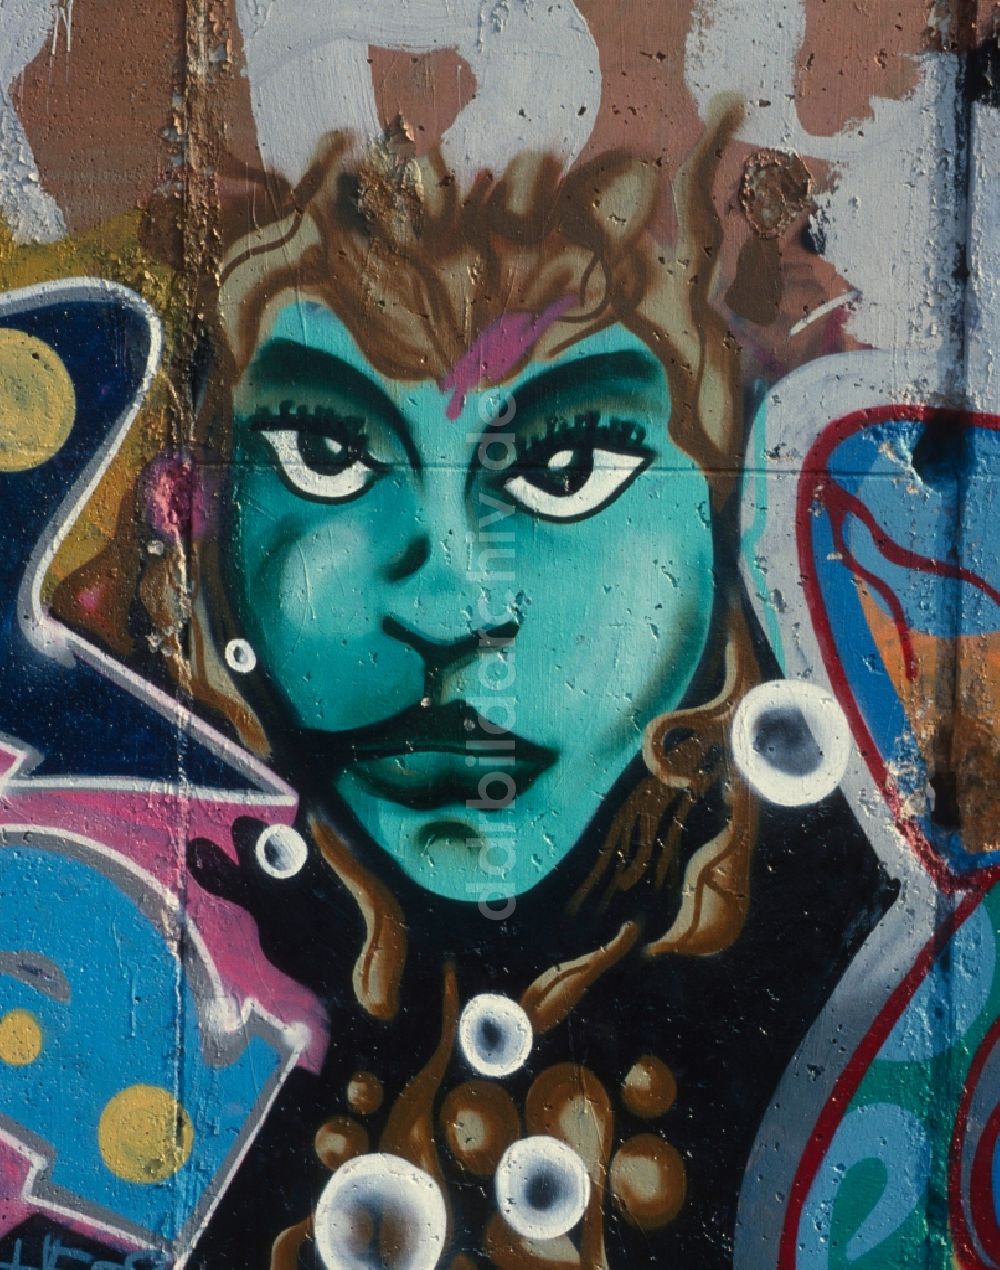 Berlin - Friedrichshain: Graffiti - Kunst an der Berliner Mauer in Berlin - Friedrichshain